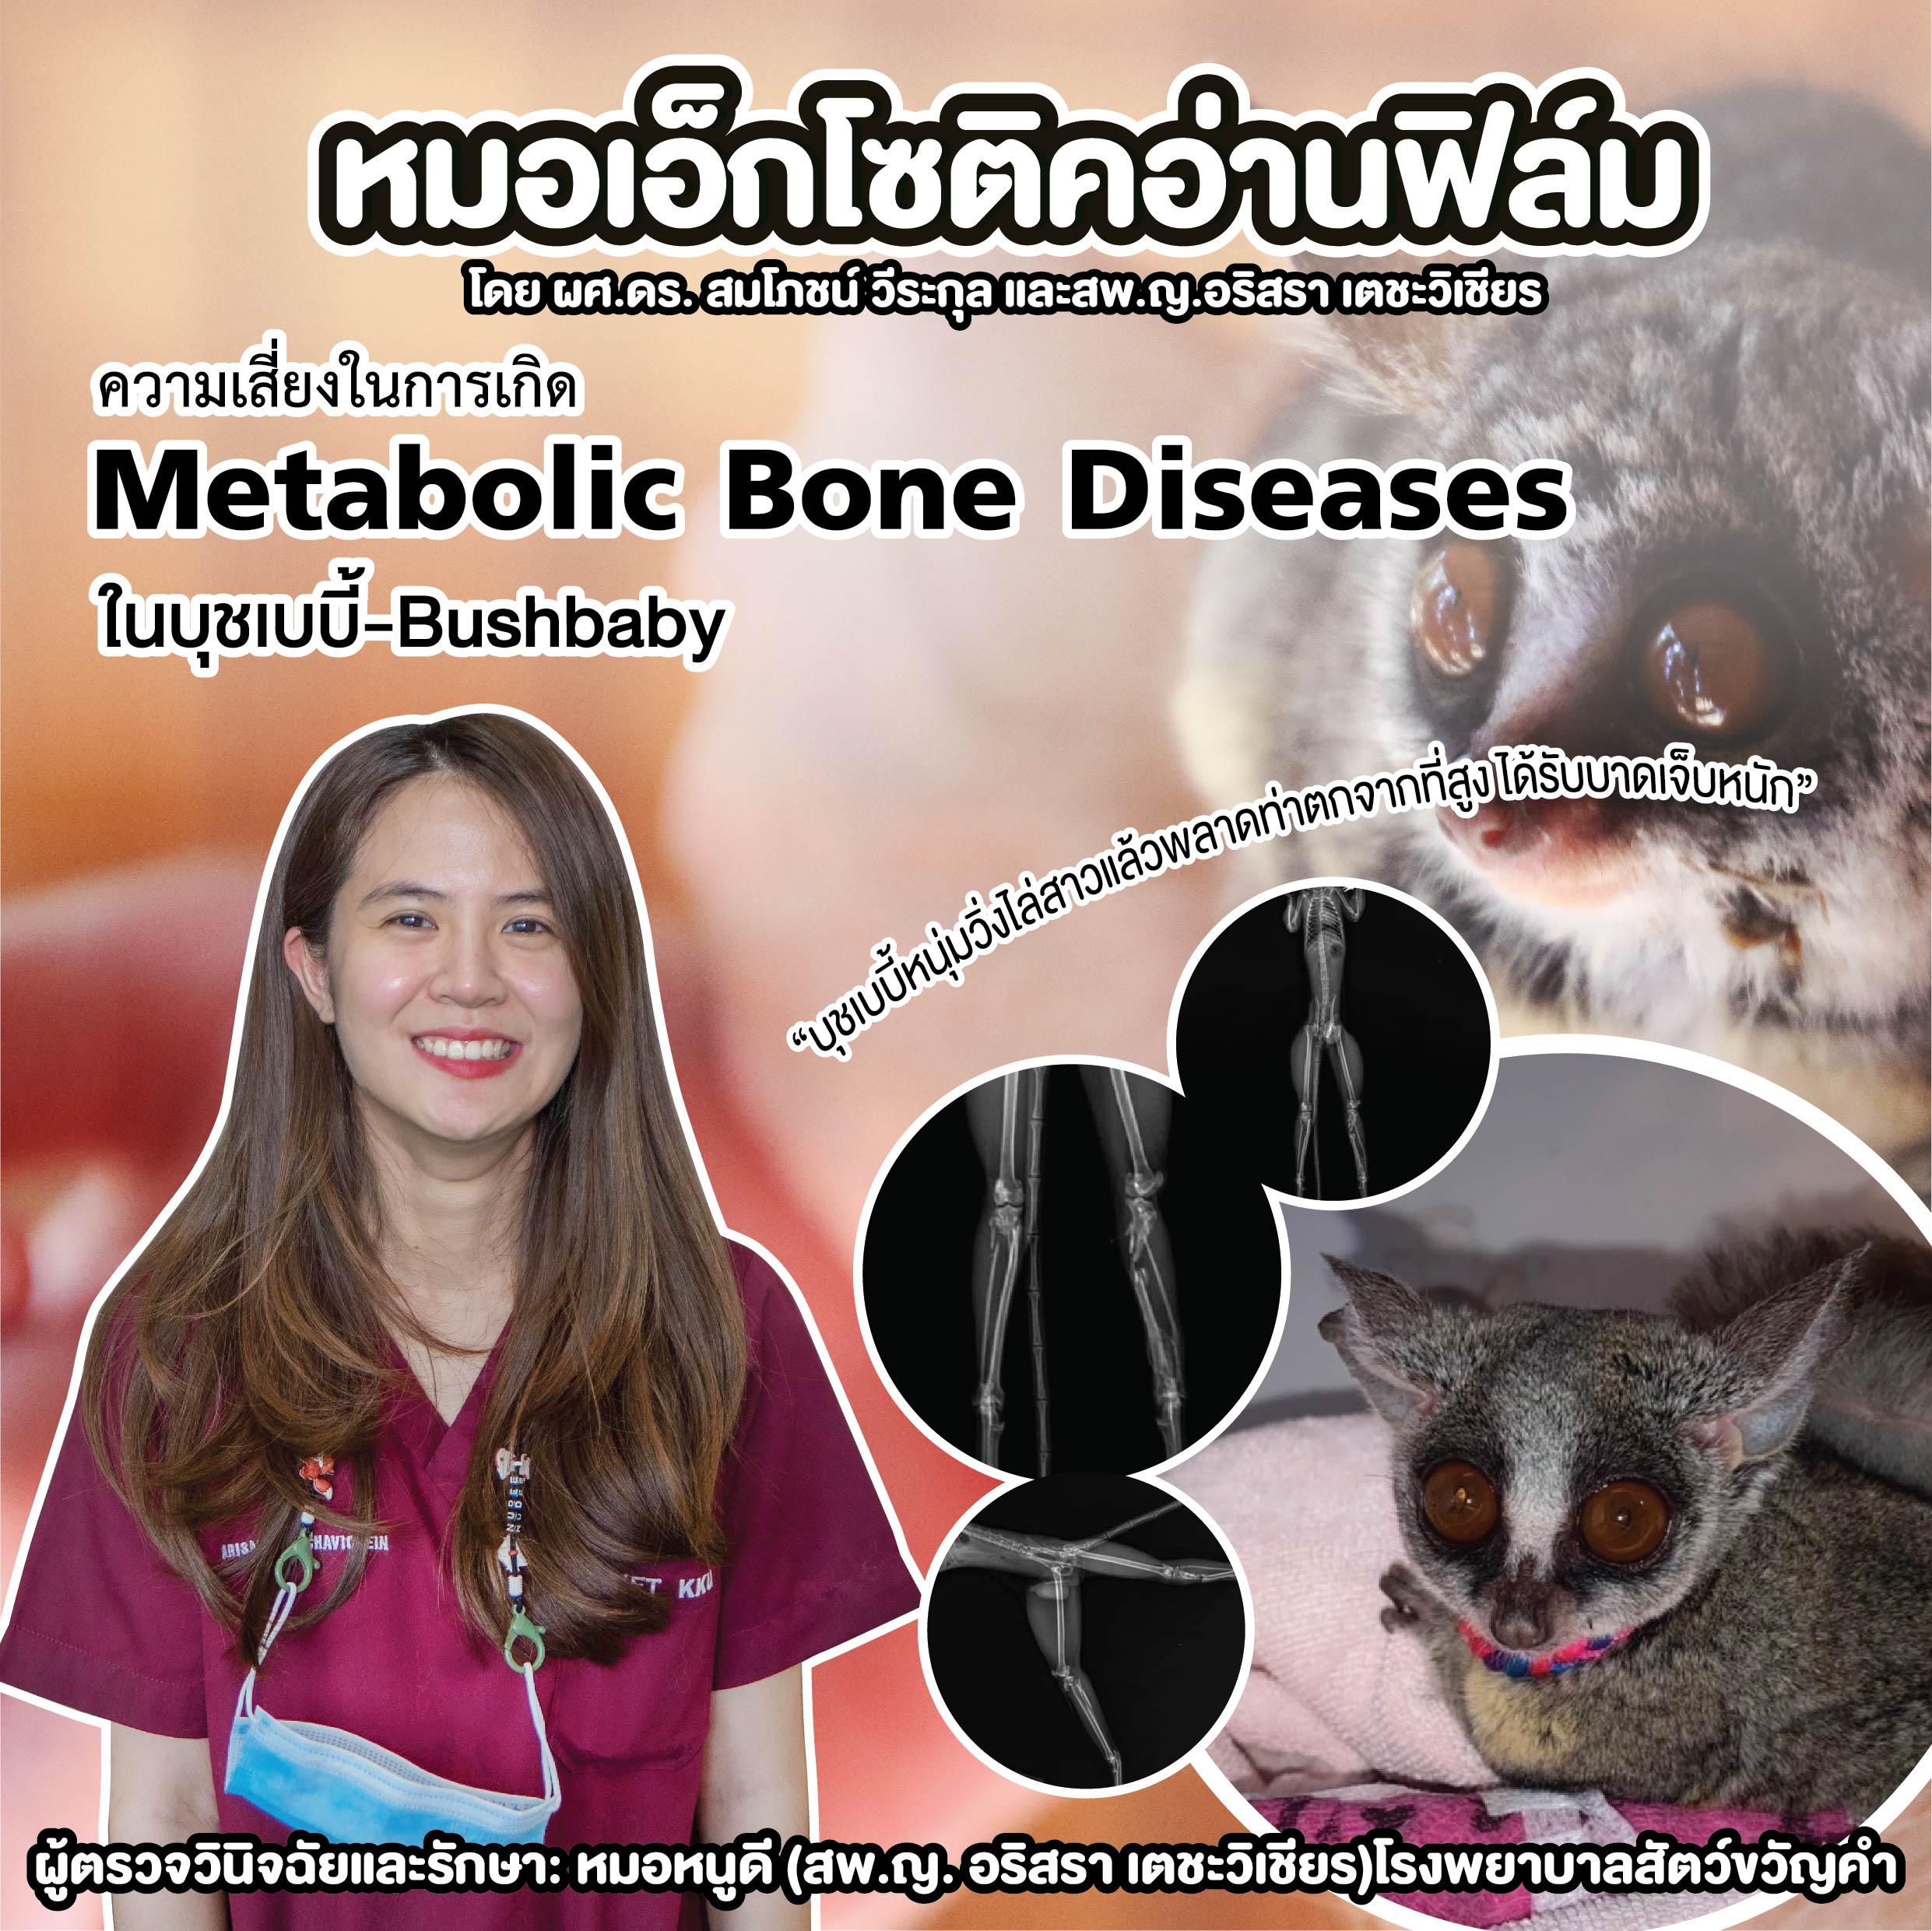 “ความเสี่ยงในการเกิด Metabolic Bone Diseases ในบุชเบบี้-Bushbaby”